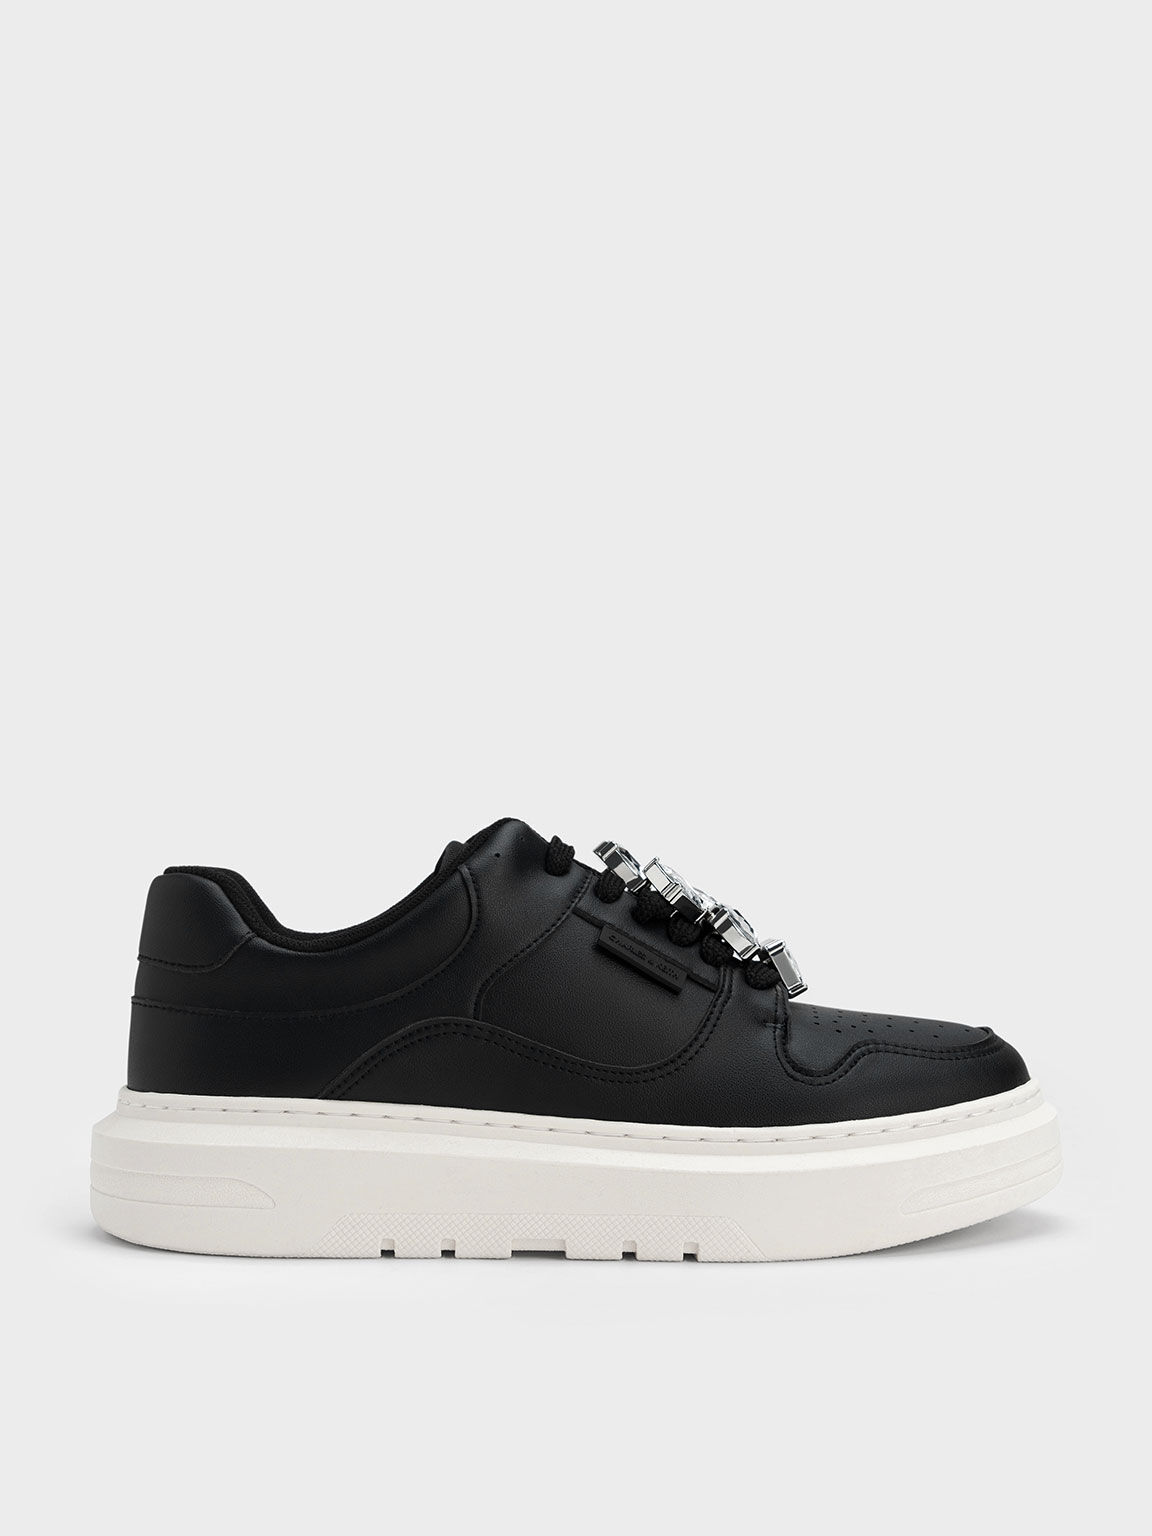 Gem-Embellished Platform Sneakers, Black, hi-res